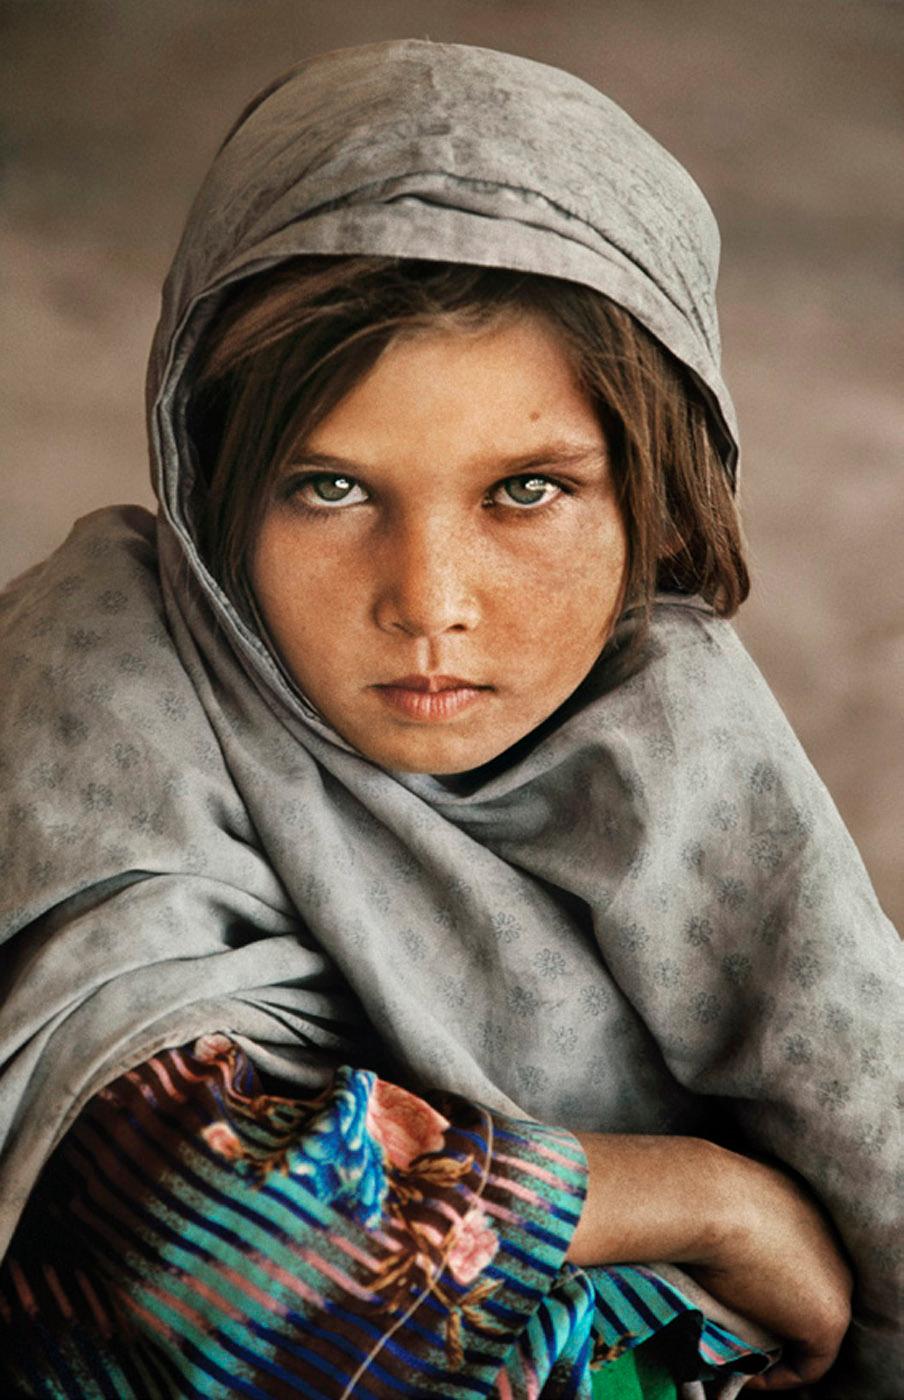 Afghanisches Nomadenmädchen
1990
C-Prints gedruckt auf FujiFlex Crystal Archive Super Gloss Papier
60 x 40 Zoll
Signierte und nummerierte Auflage von 10 Stück
mit Echtheitszertifikat

Steve McCurry (Amerikaner, geb. 1950) ist ein Fotojournalist,